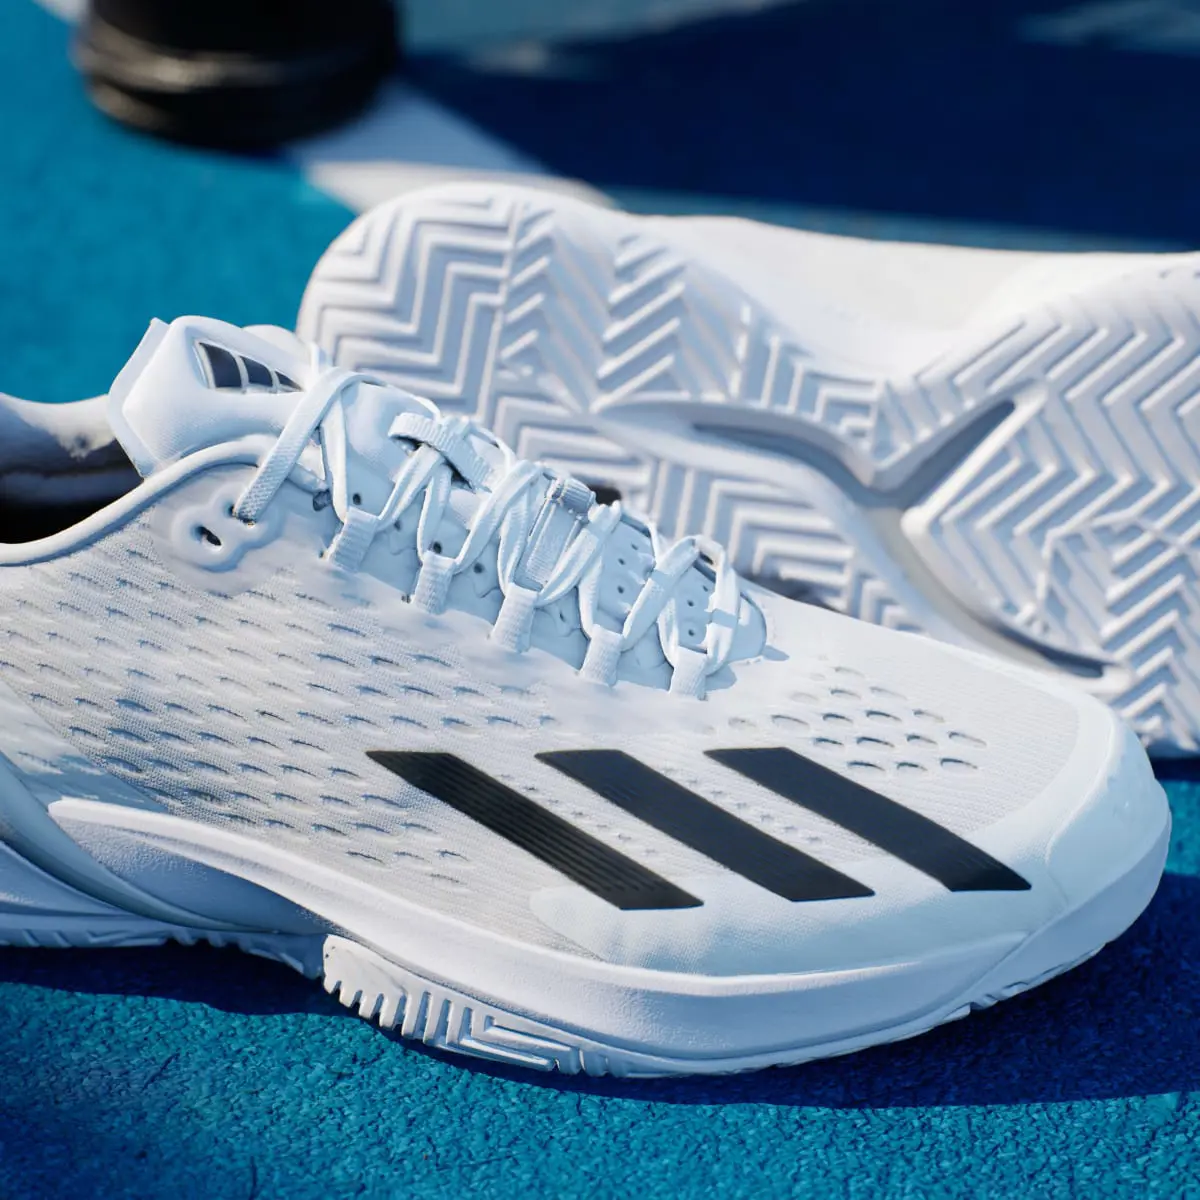 Adidas Adizero Cybersonic Tennis Shoes. 2